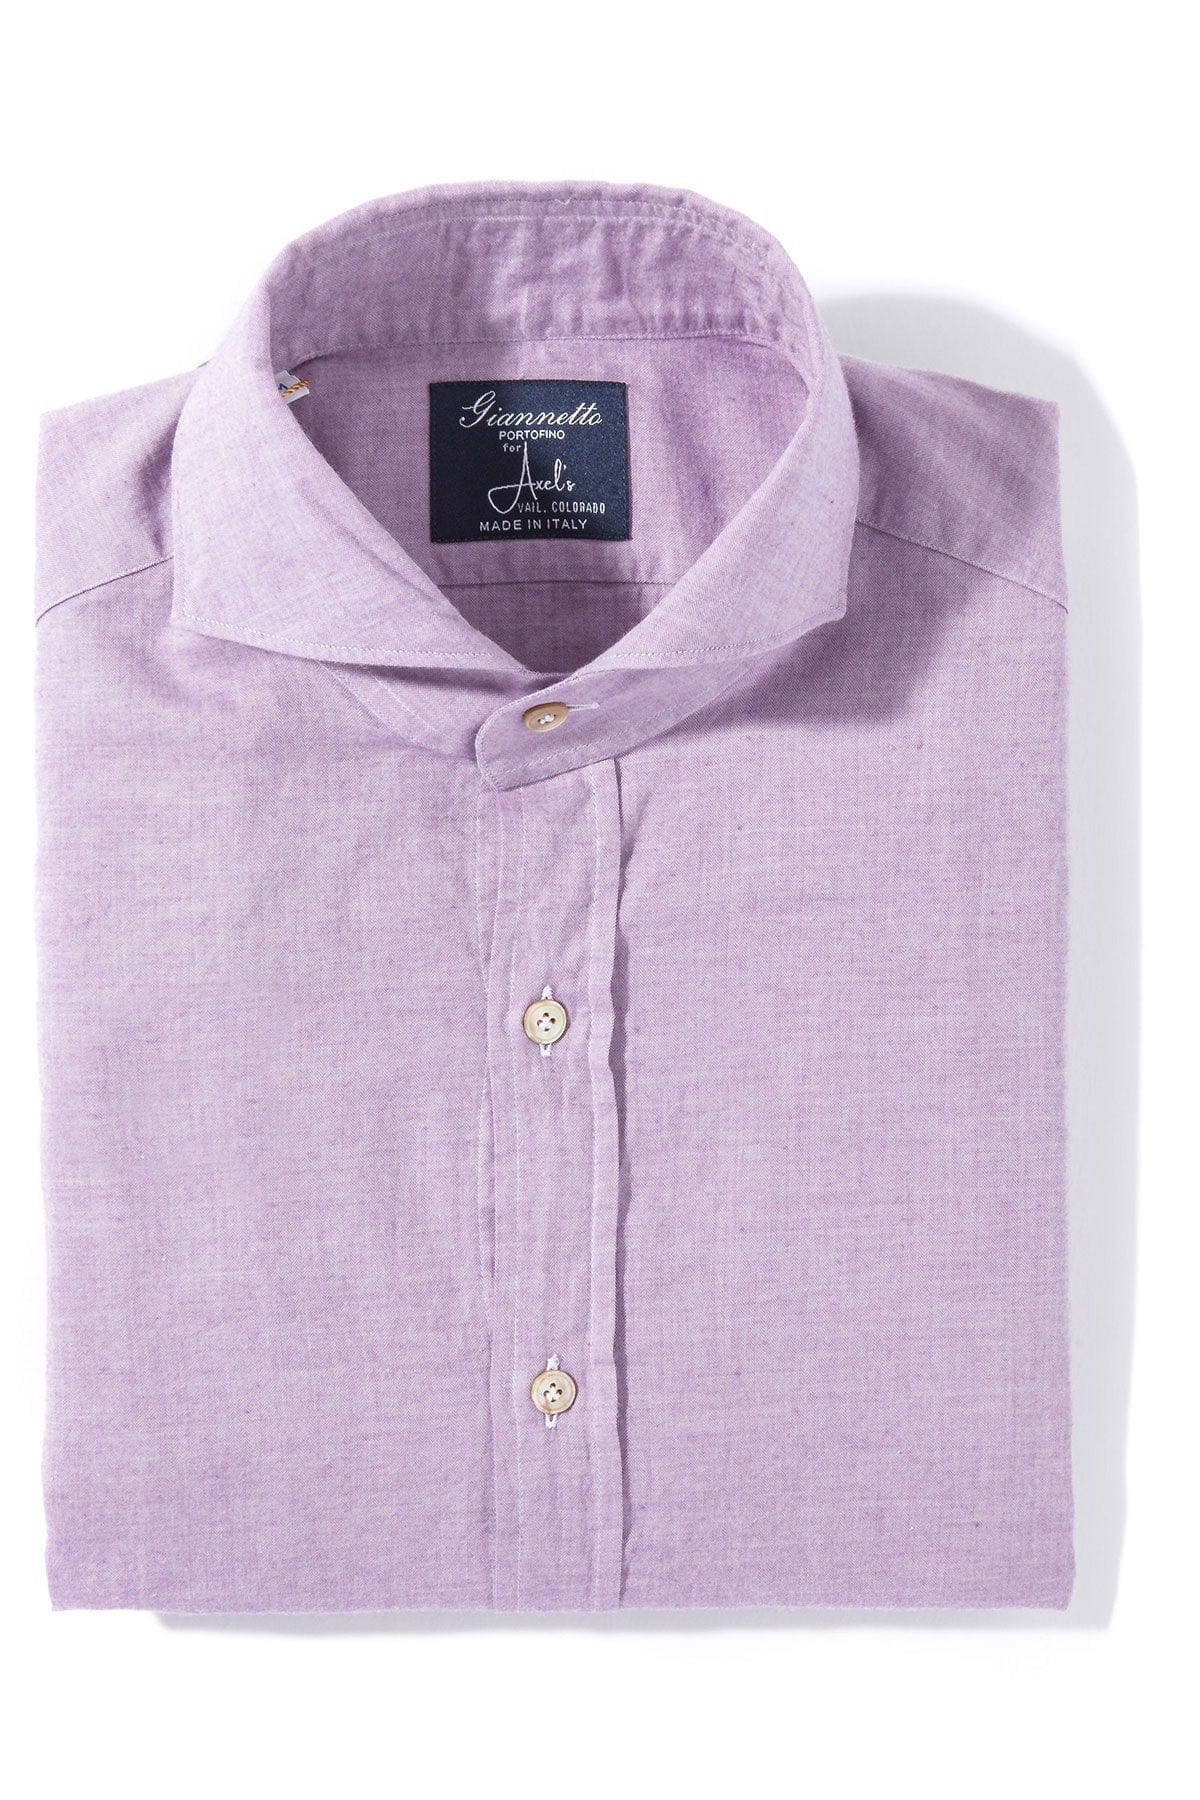 Finamore Napoli Diablo Cotton Shirt in Purple – AXEL'S